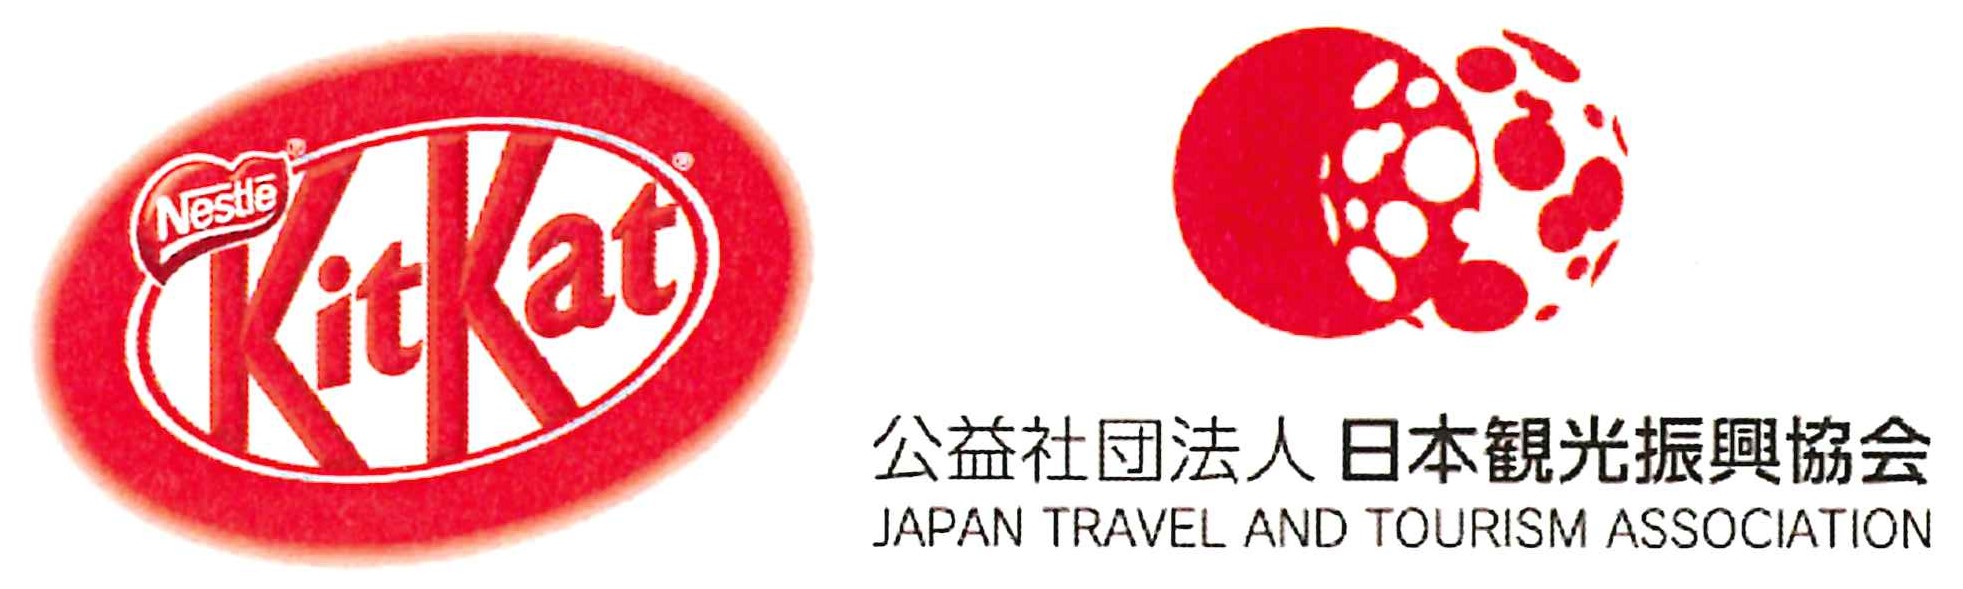 いつか キット 行きたい 日本全国の観光地域を支援 ご当地 キットカット 寄付金付き商品を10月19日 月 より順次発売 公益社団法人日本 観光振興協会のプレスリリース